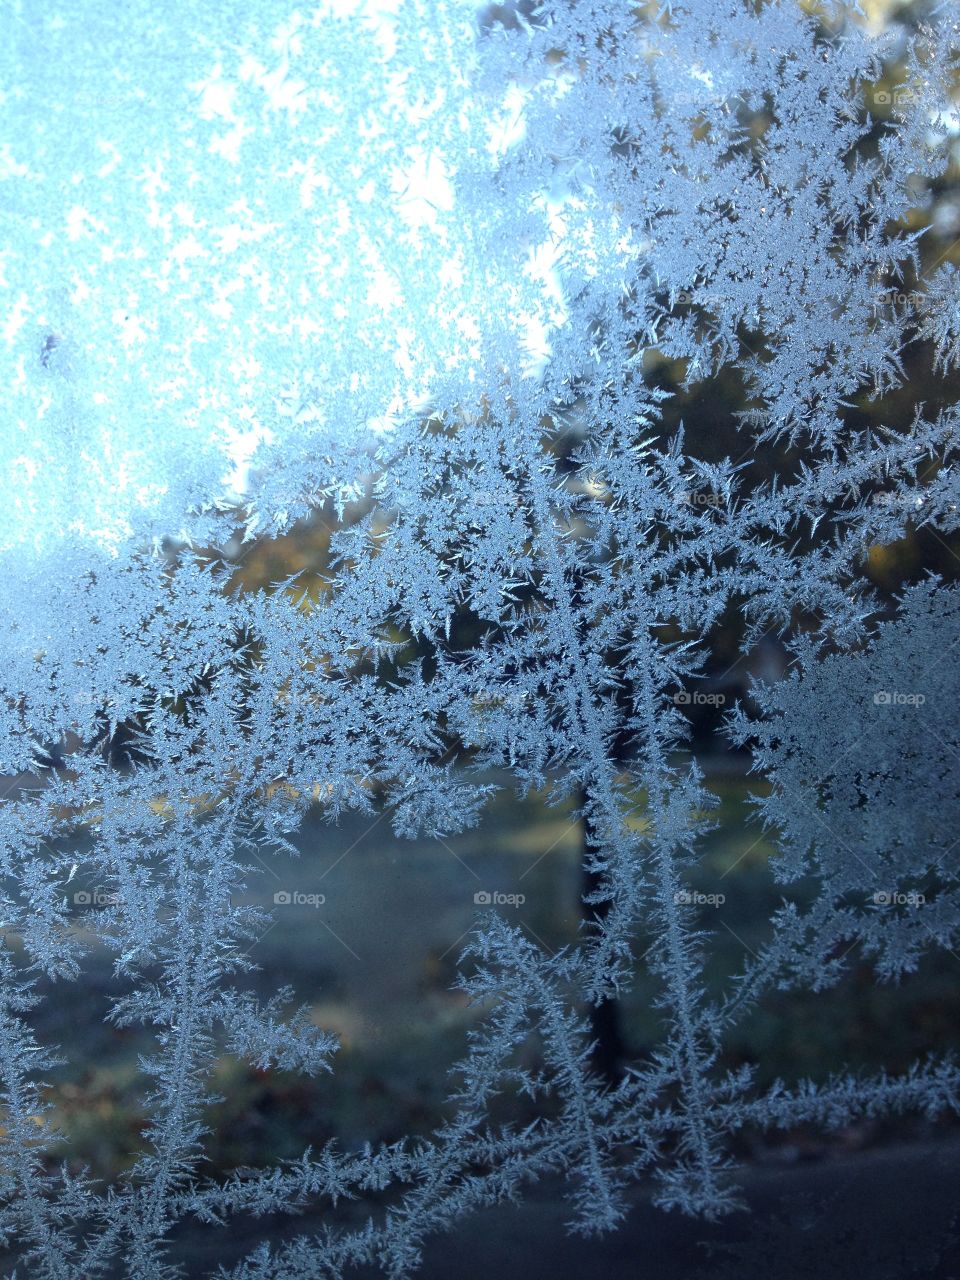 Frost on car window.